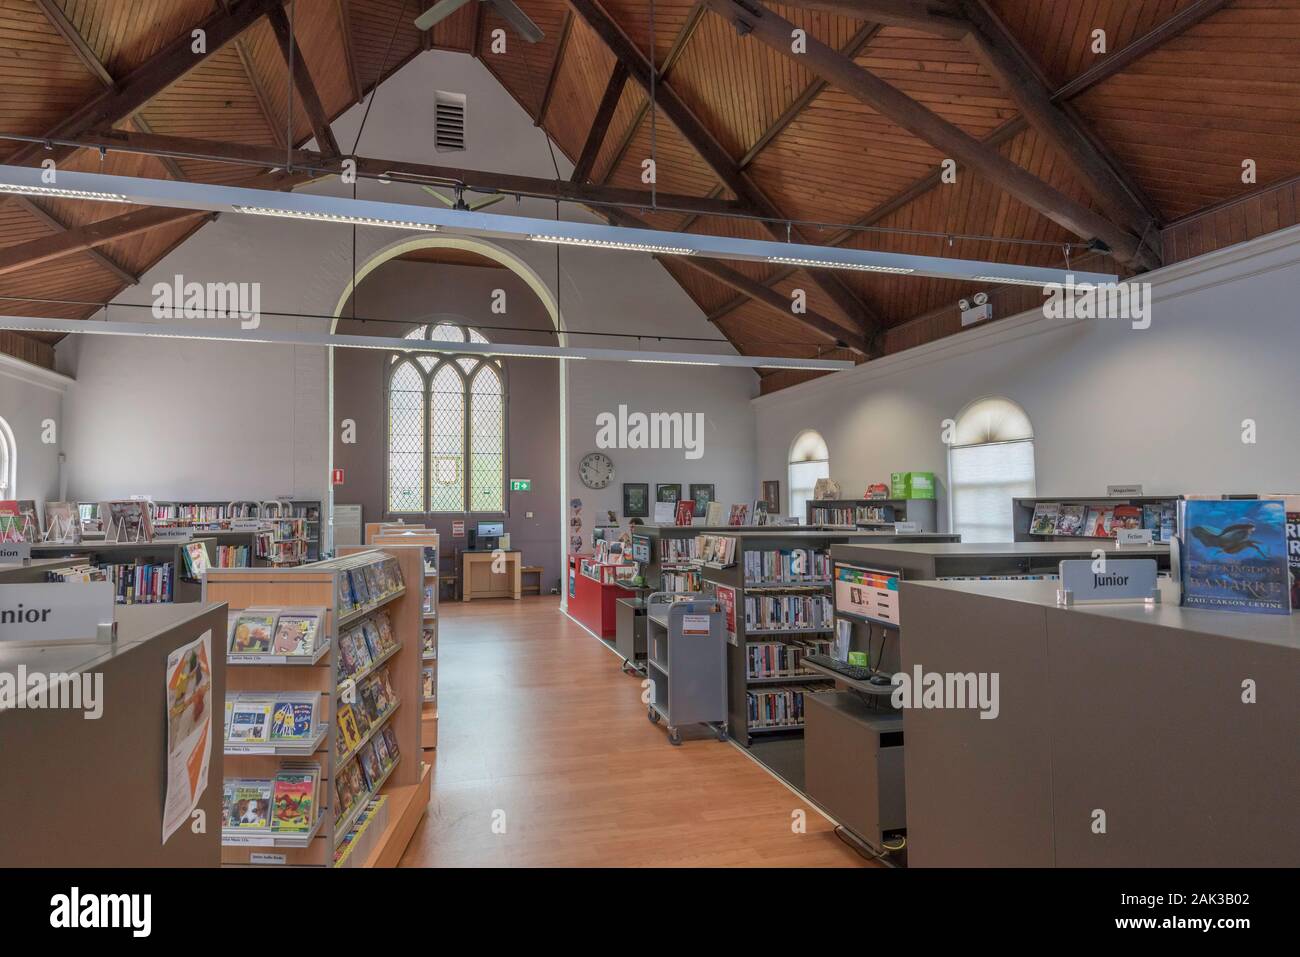 Kamp-lintfort Öffentliche Bibliothek befindet sich in einem ehemaligen kleinen Kirche mit einem offenen Holz gelegen, gesäumt von Decke und sichtbare Dachstühle auf Sydneys North Shore entfernt Stockfoto